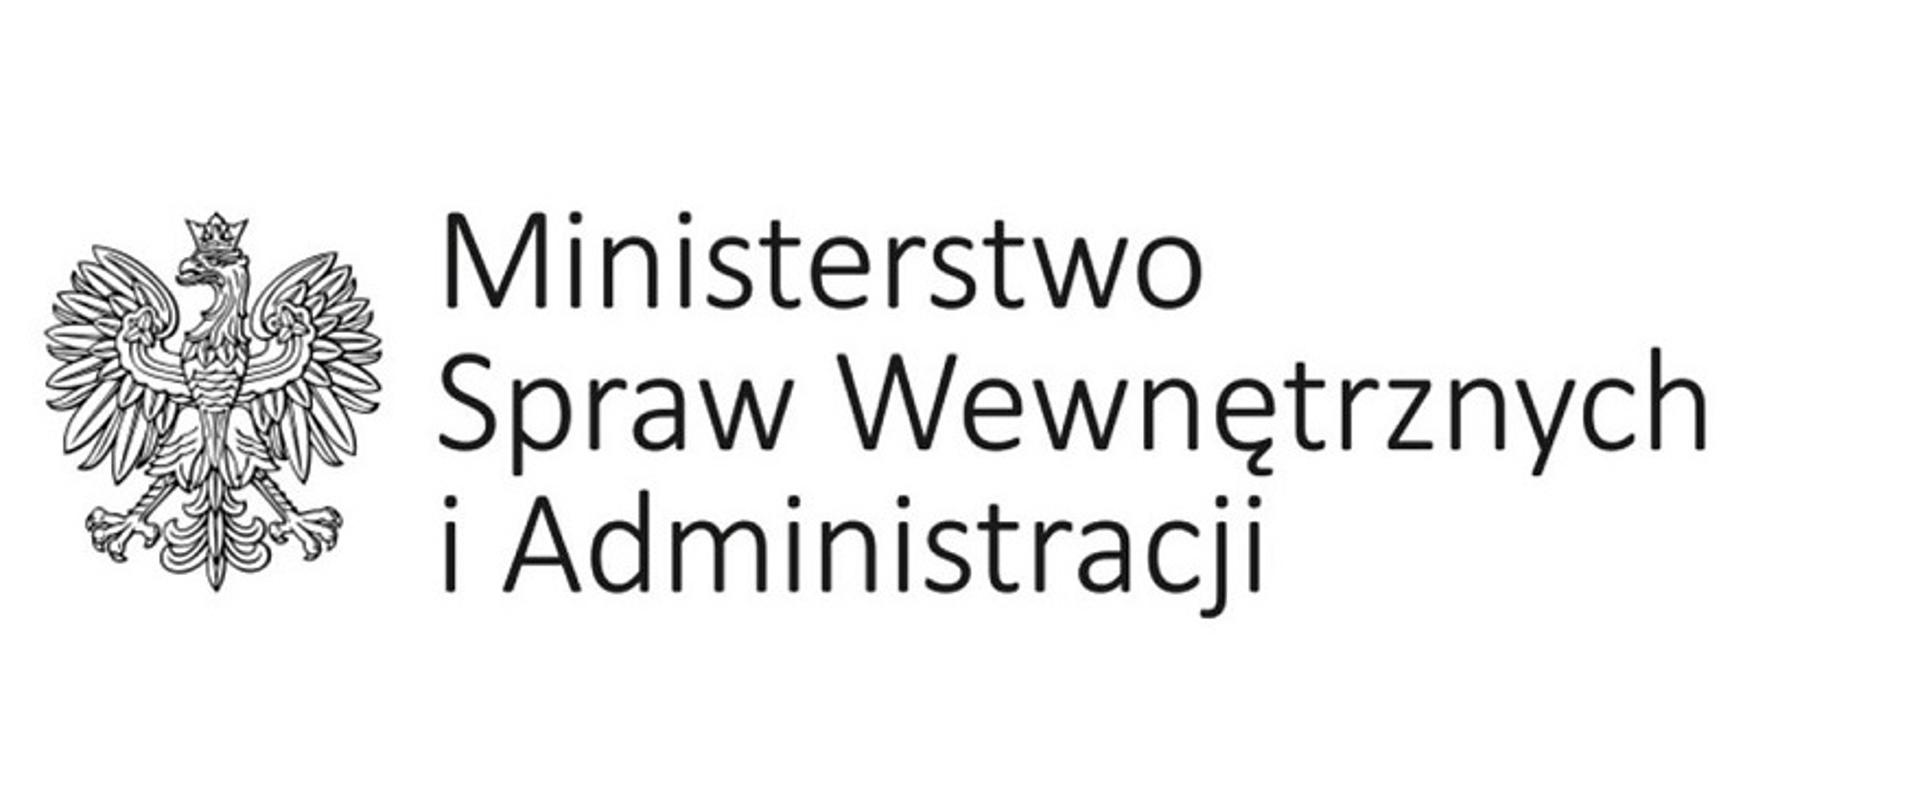 Zdjęcie przedstawia godło Państwowe oraz napis Ministerstwo Spraw Wewnętrznych i Administracji